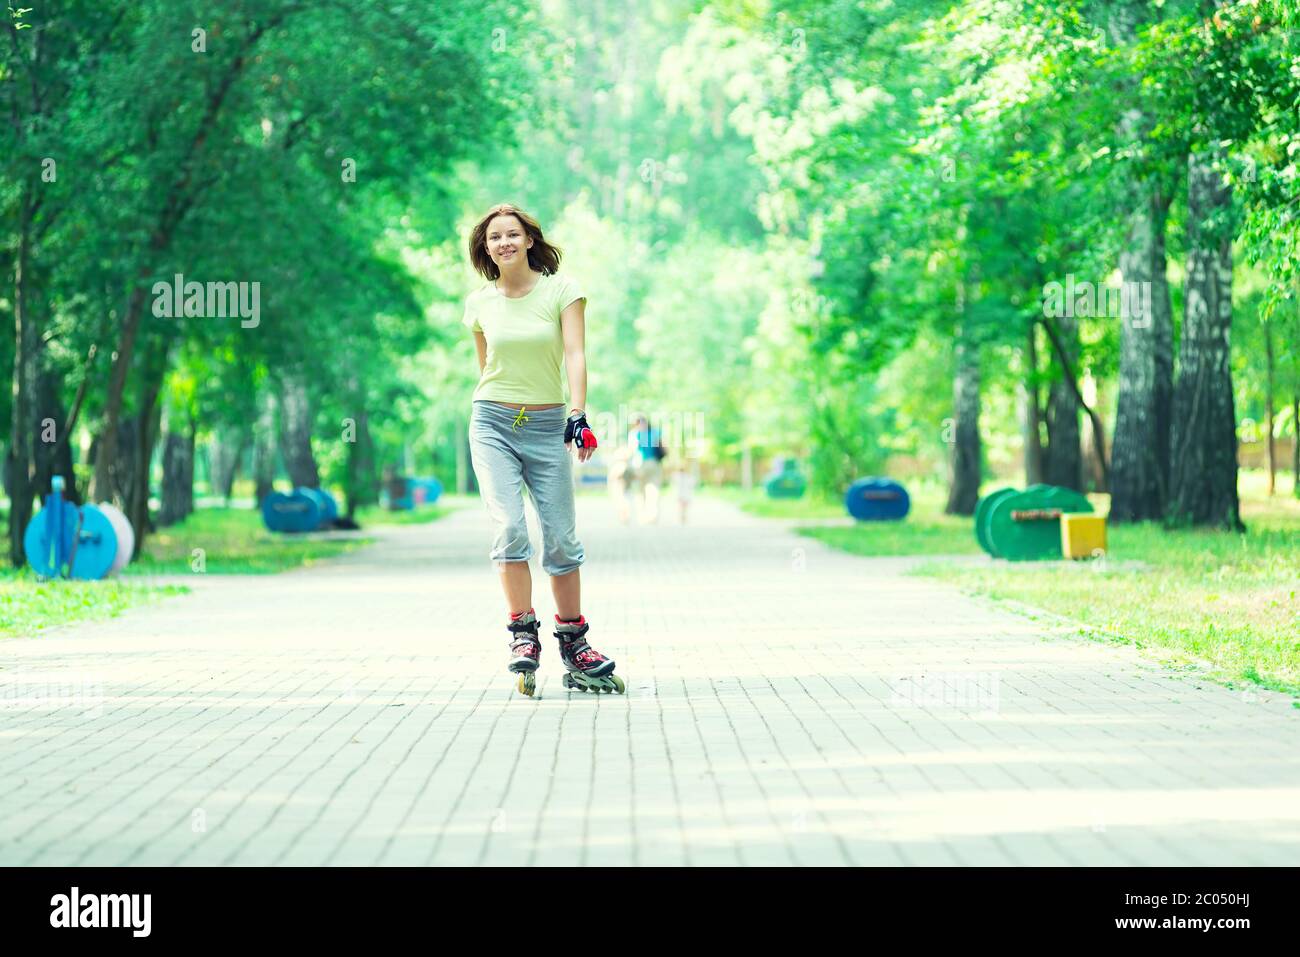 Patinar en el parque deportivo de chica patinar sobre patines en línea Foto de stock